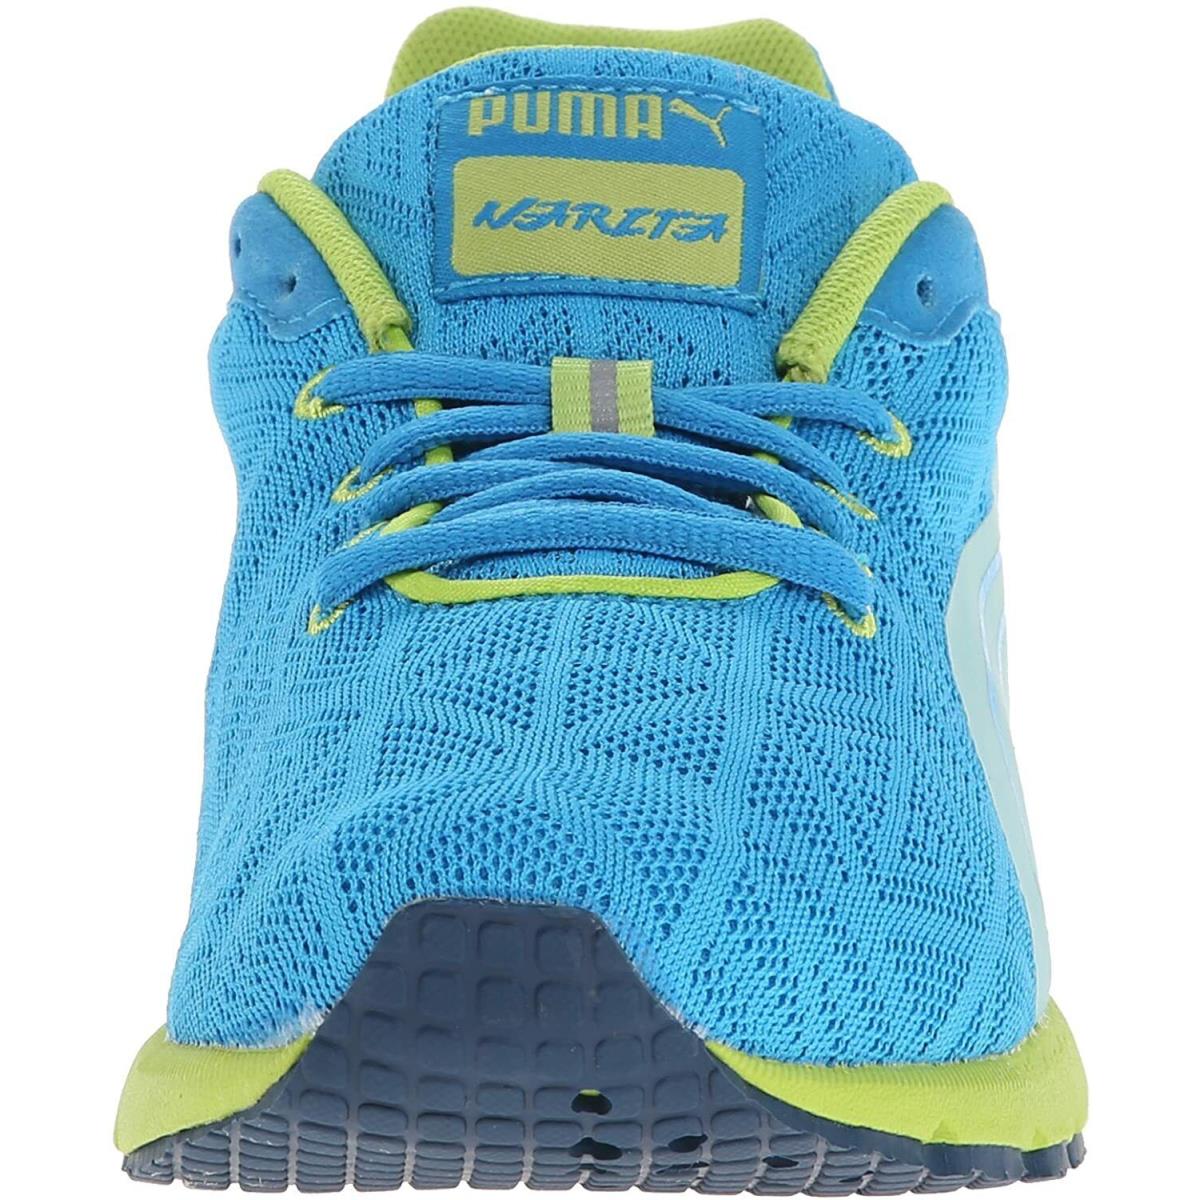 Puma shoes Narita - Blue atoll/White/Beetroot 1